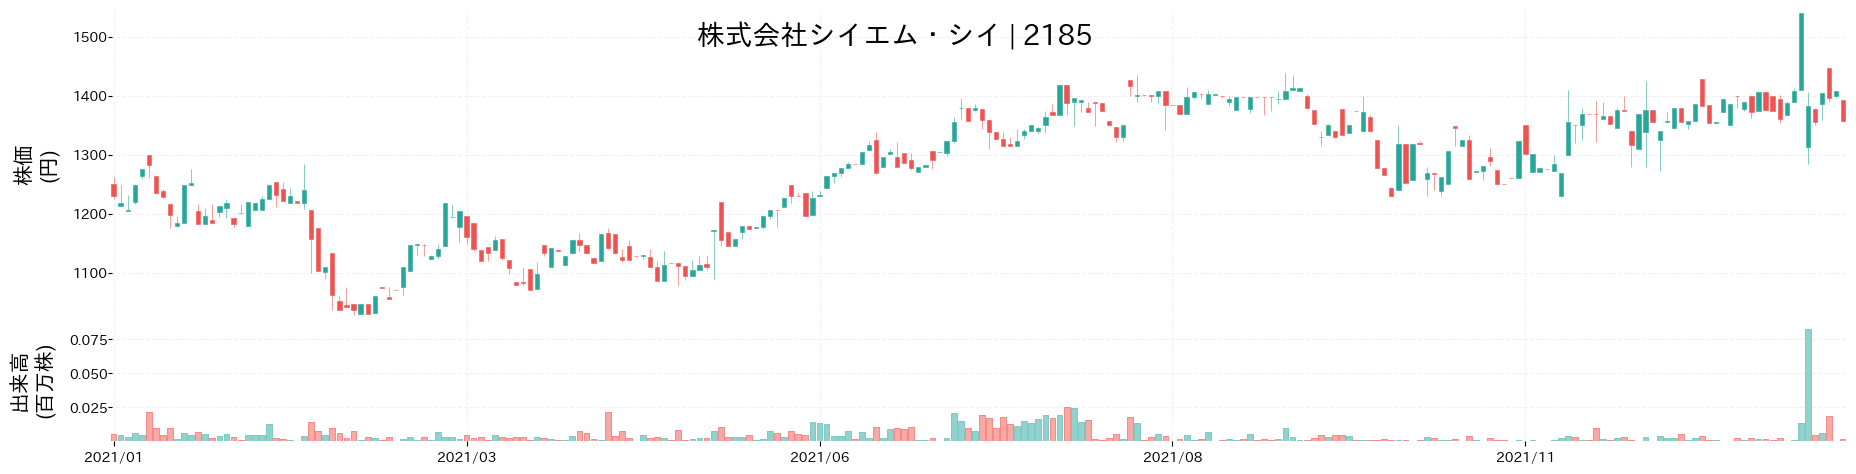 シイエム・シイの株価推移(2021)